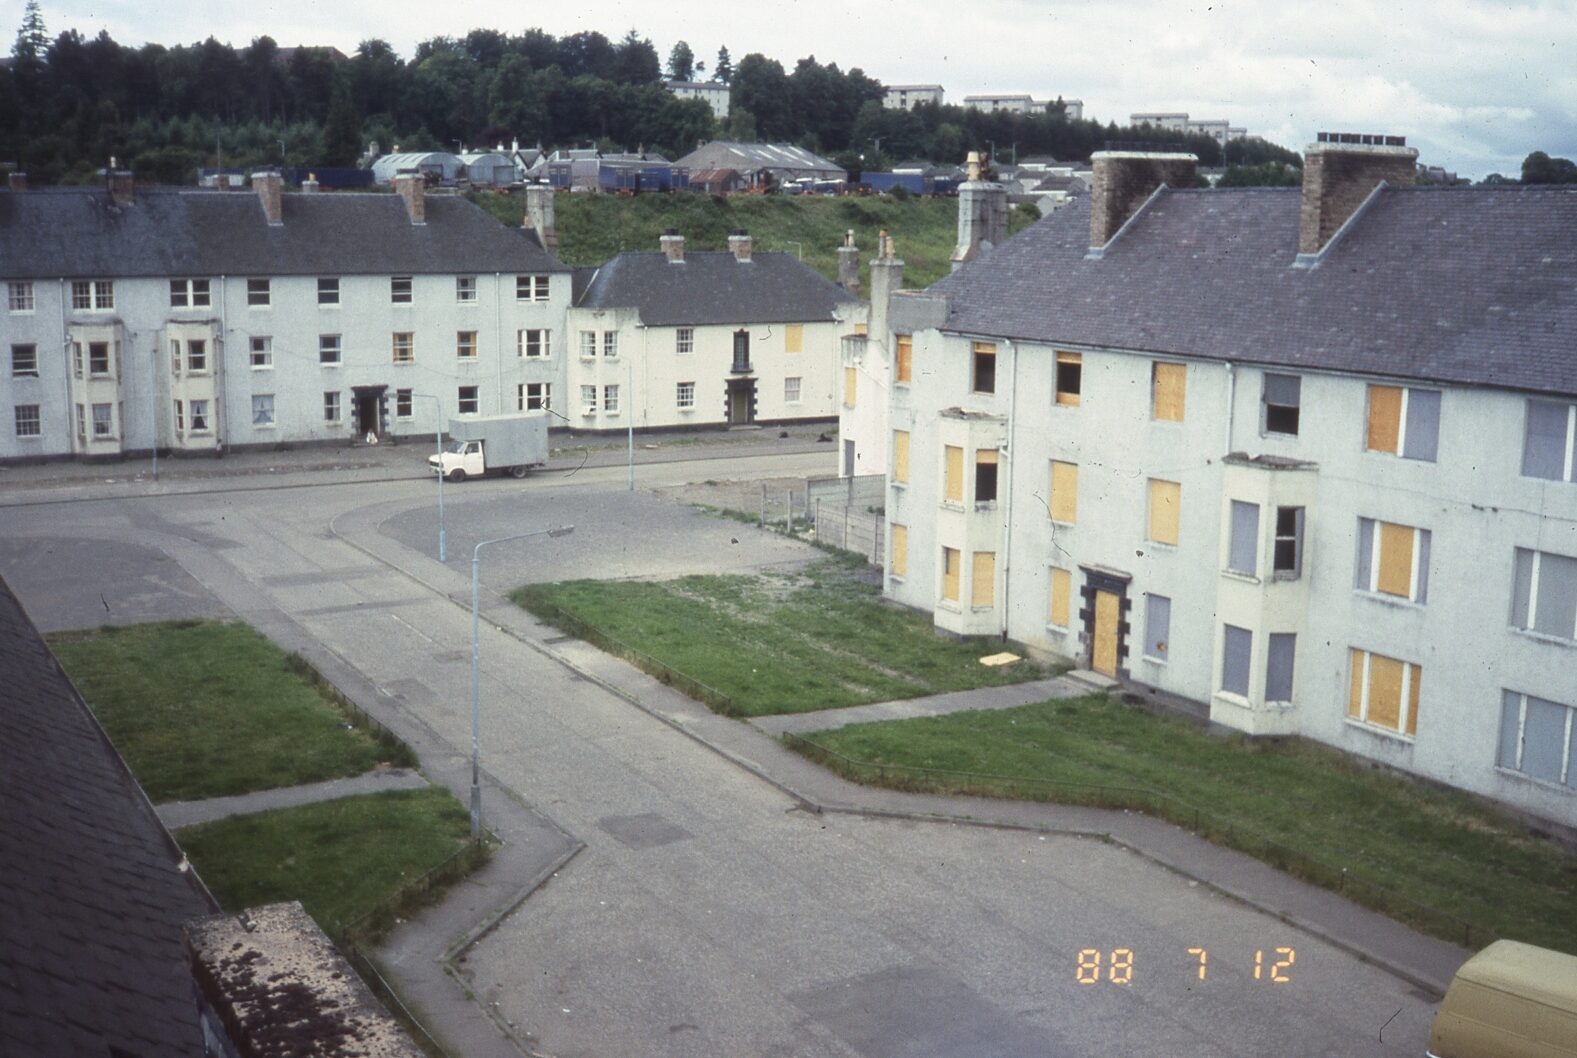 Hunter Crescent in 1988.